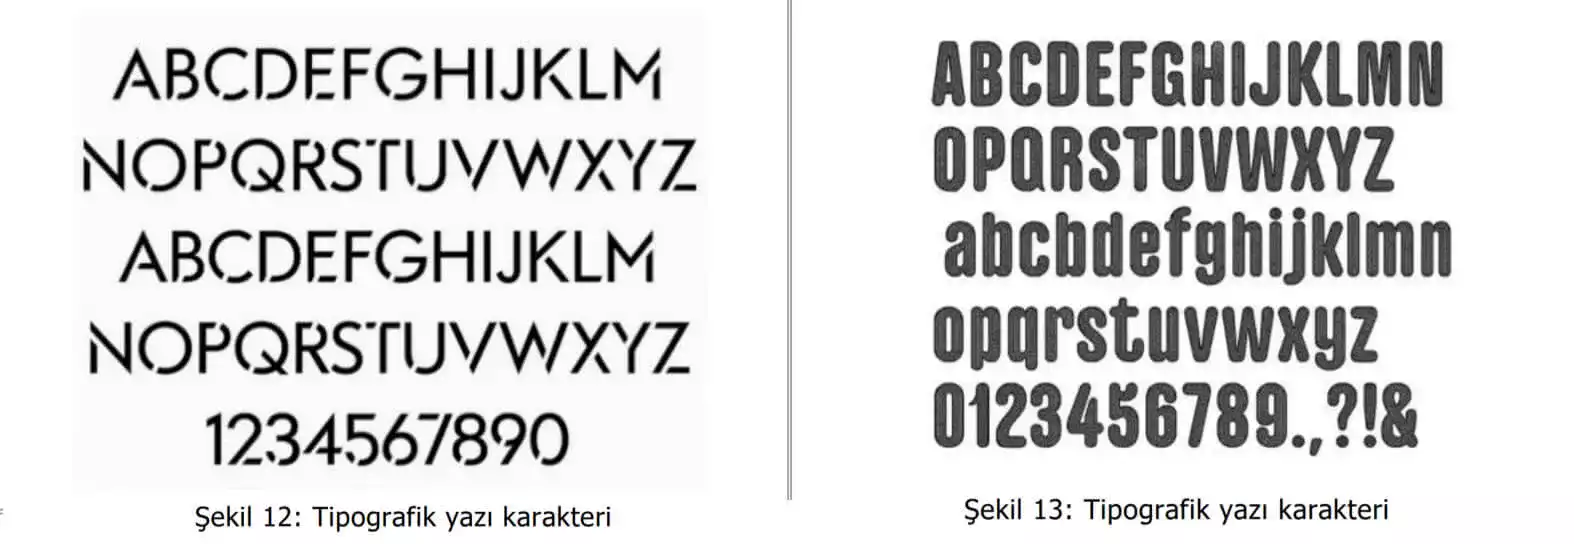 tipografik yazı karakter örnekleri-Ümraniye Web Tasarım